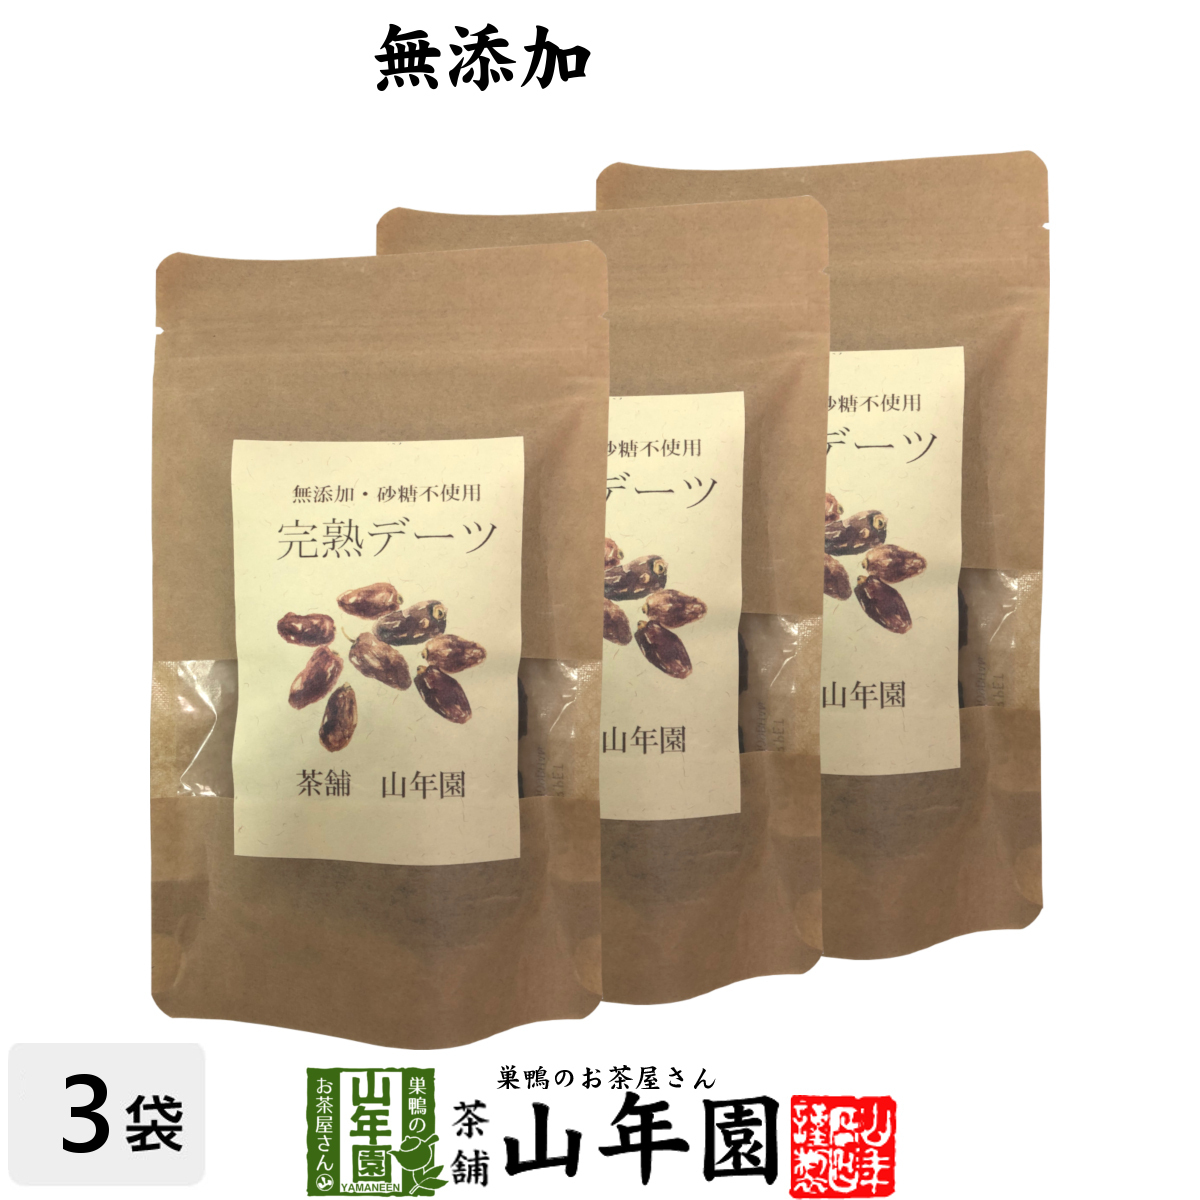 UAE production knaiji kind ..te-tsu100g×3 sack set .. thing un- use te-tsu brown sugar. like . taste 